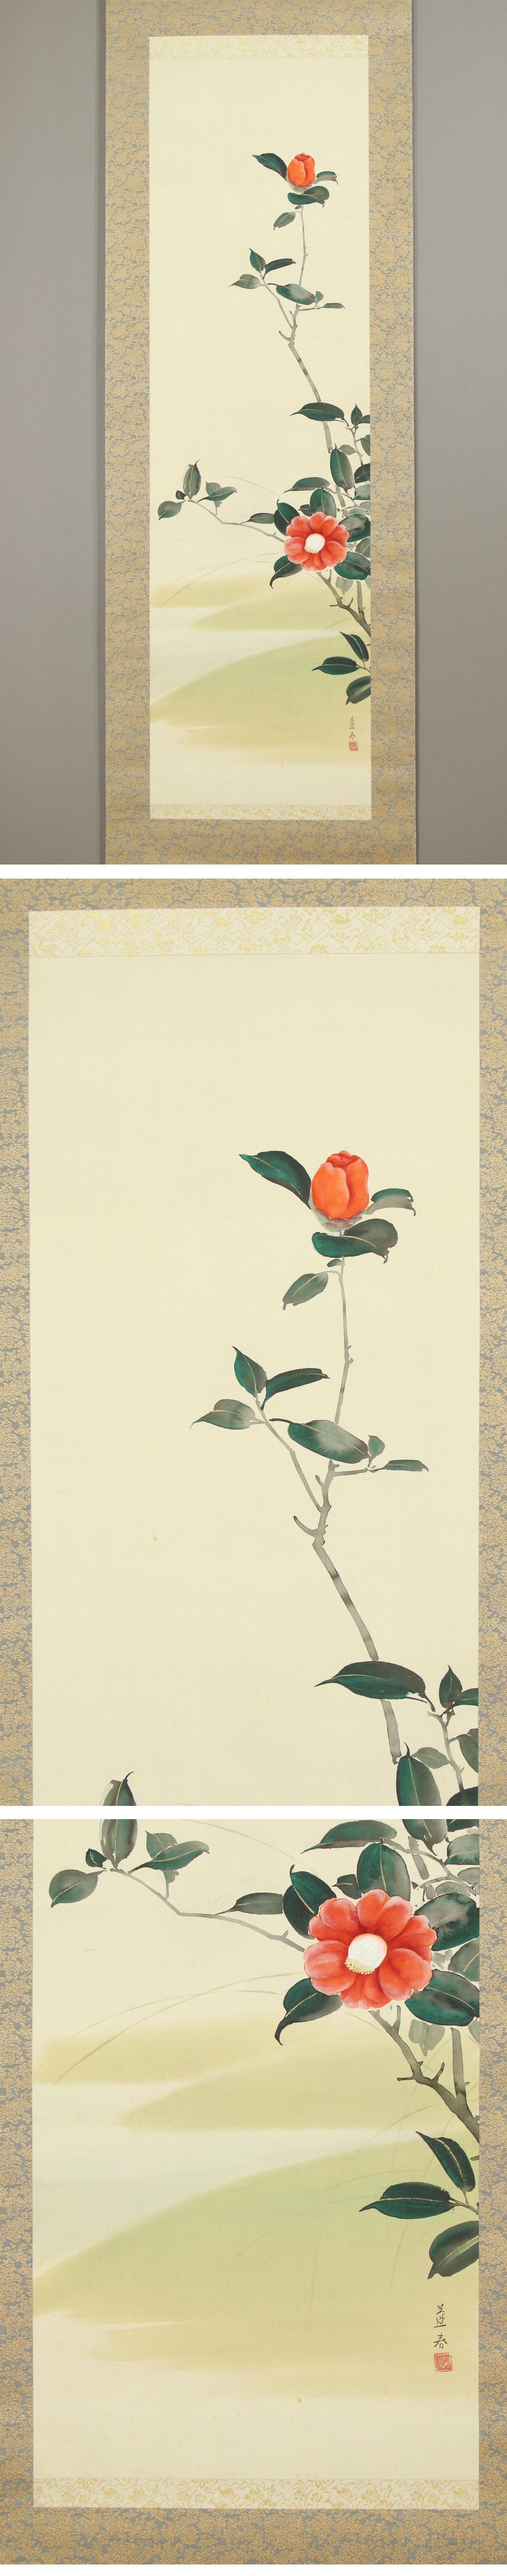 【格安在庫】◆山口蓬春◆椿◆日本画◆北海道◆絹本◆掛軸◆k809 花鳥、鳥獣